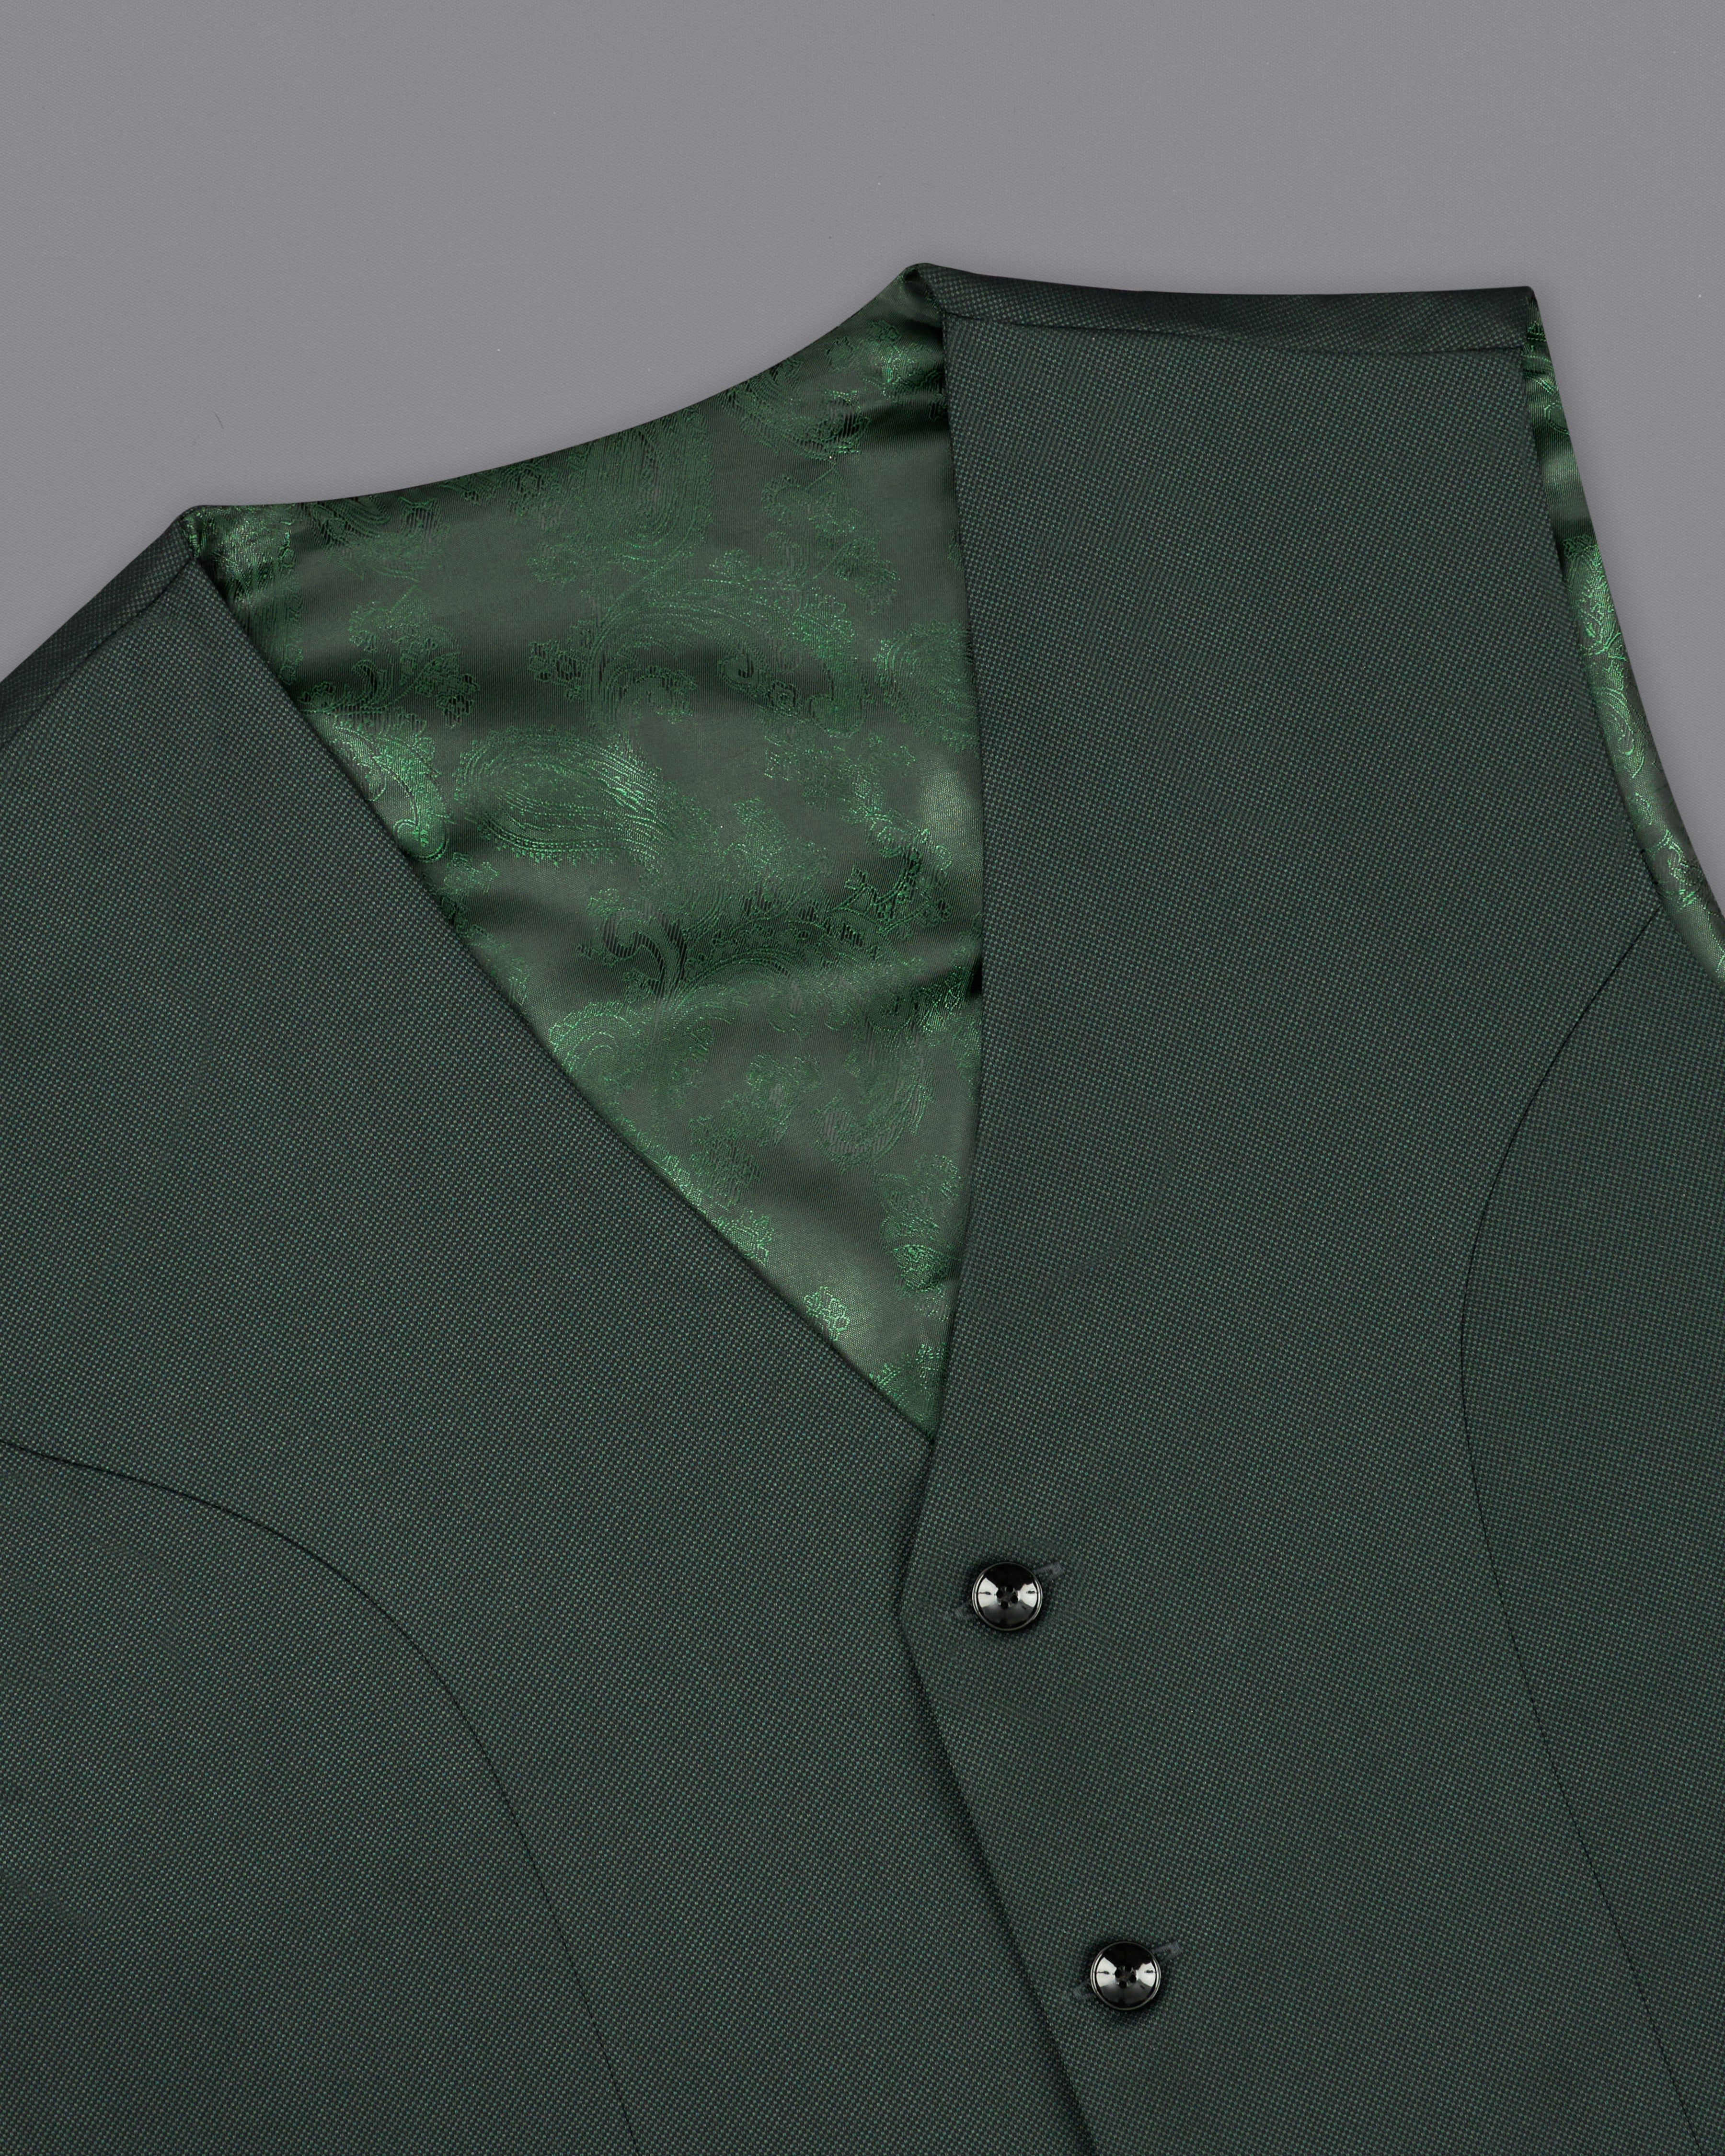 Heavy Metal Dark Green Single Breasted Suit